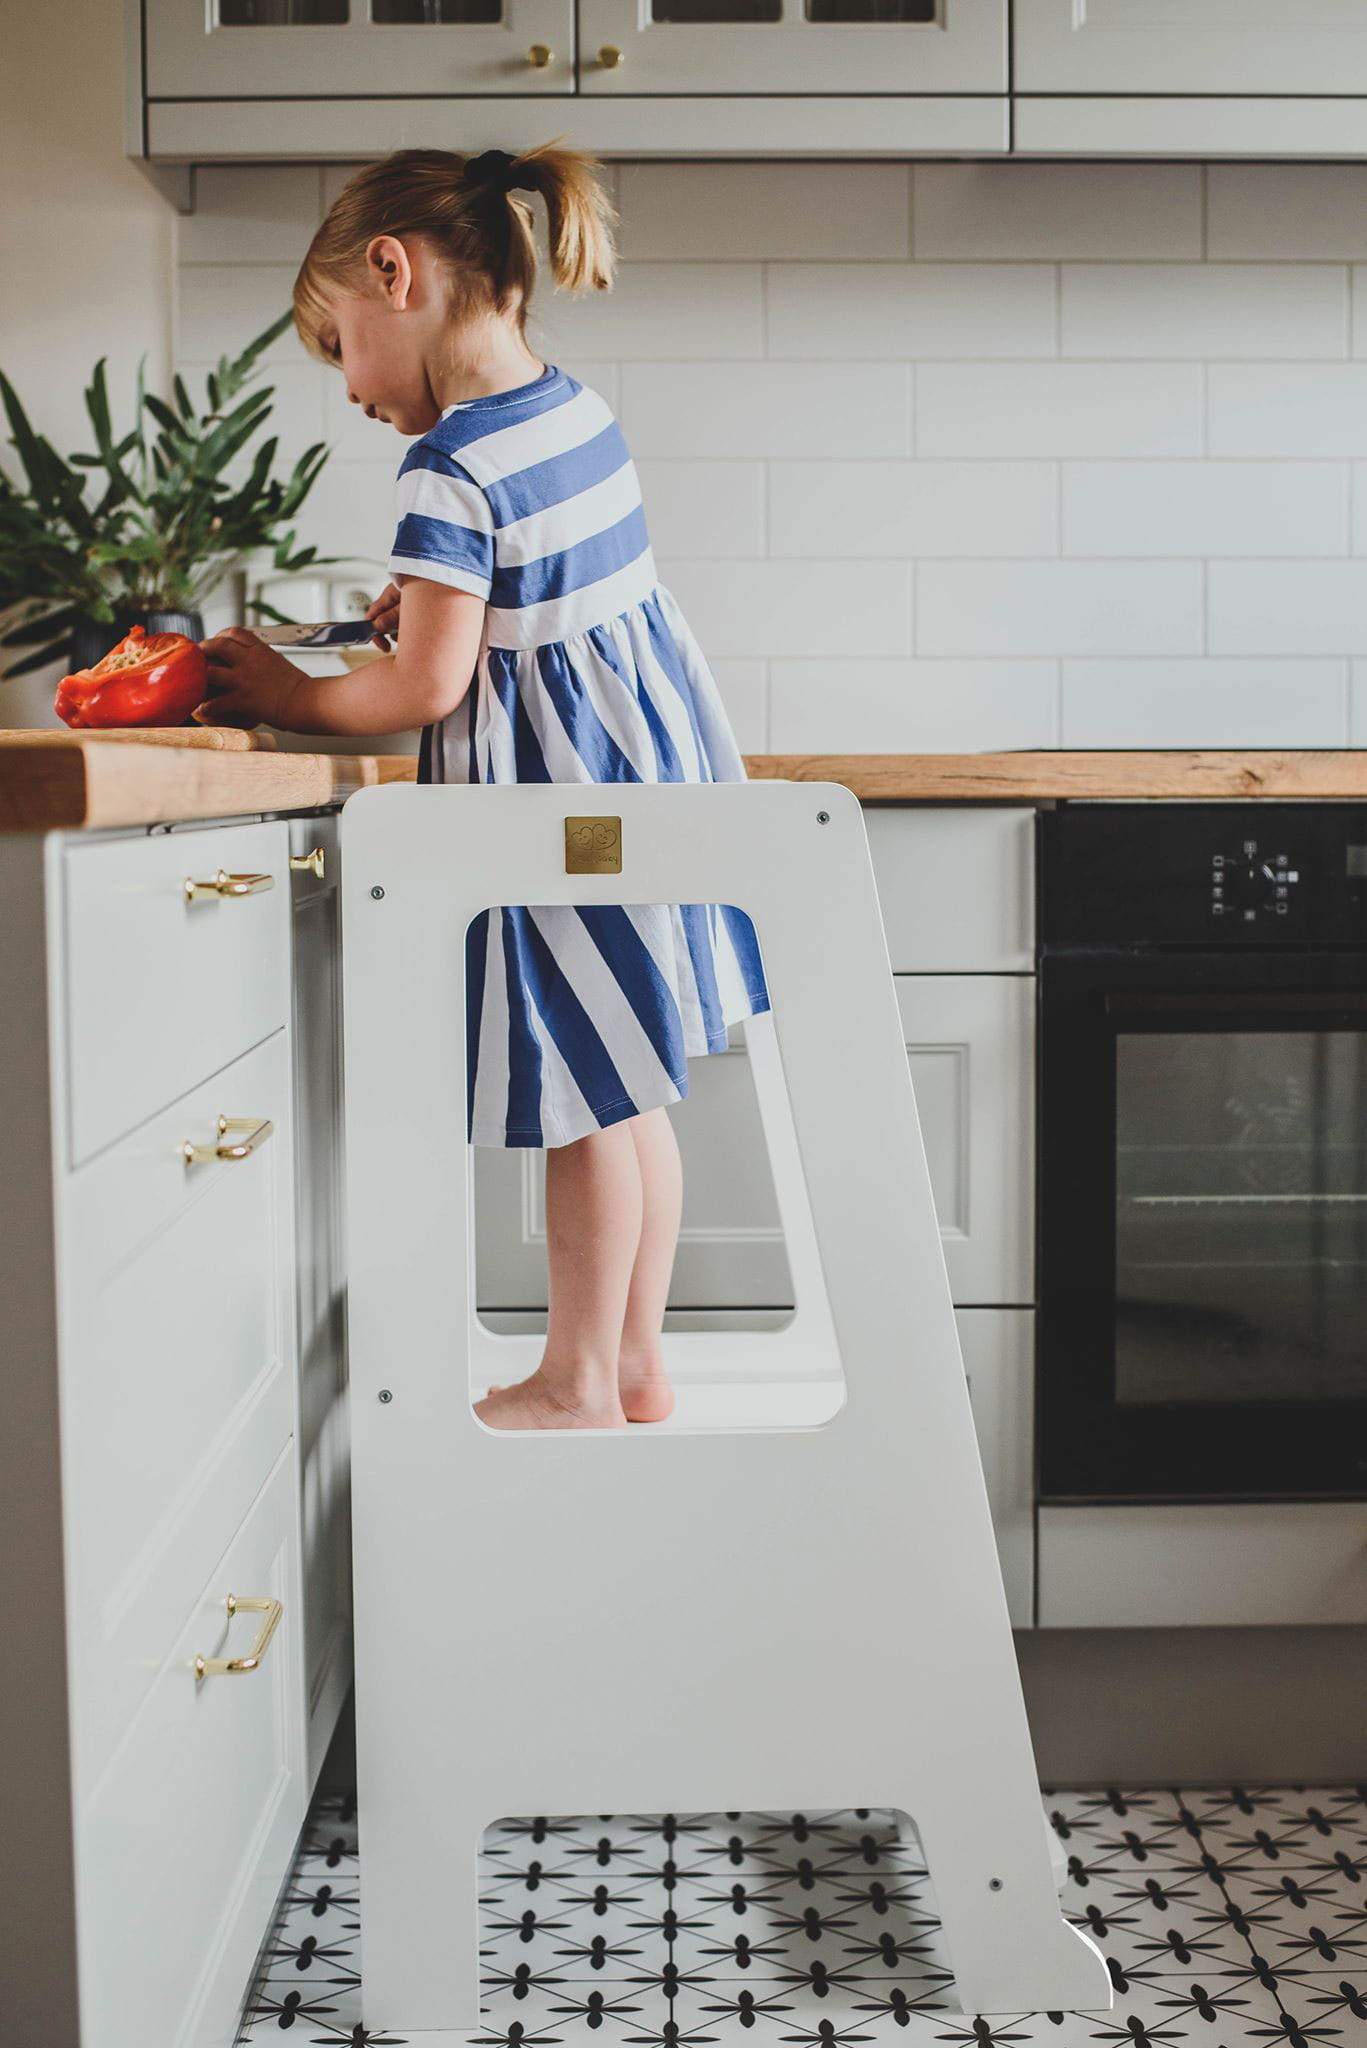 Keuken helper voor kids - Premium in de keuken